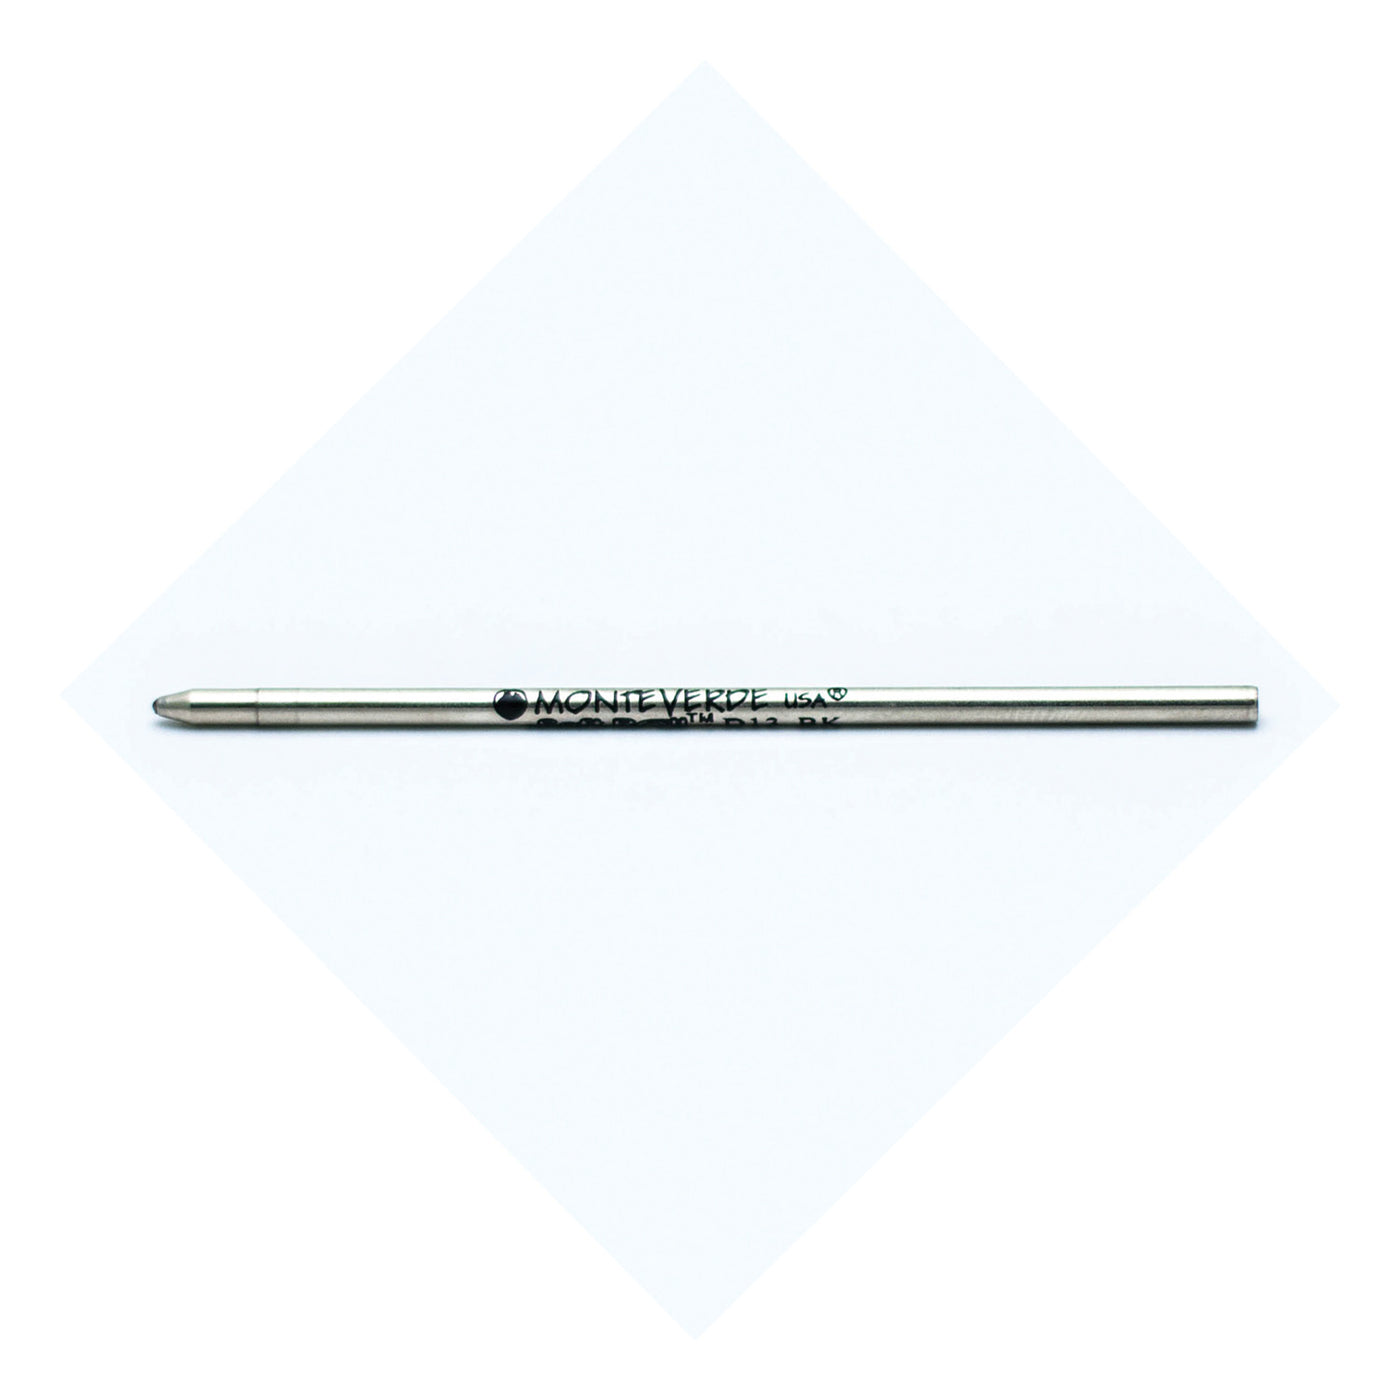 Monteverde Mini Ball Pen Refill for Multi Pen - Medium - Green - Pack of 4 3